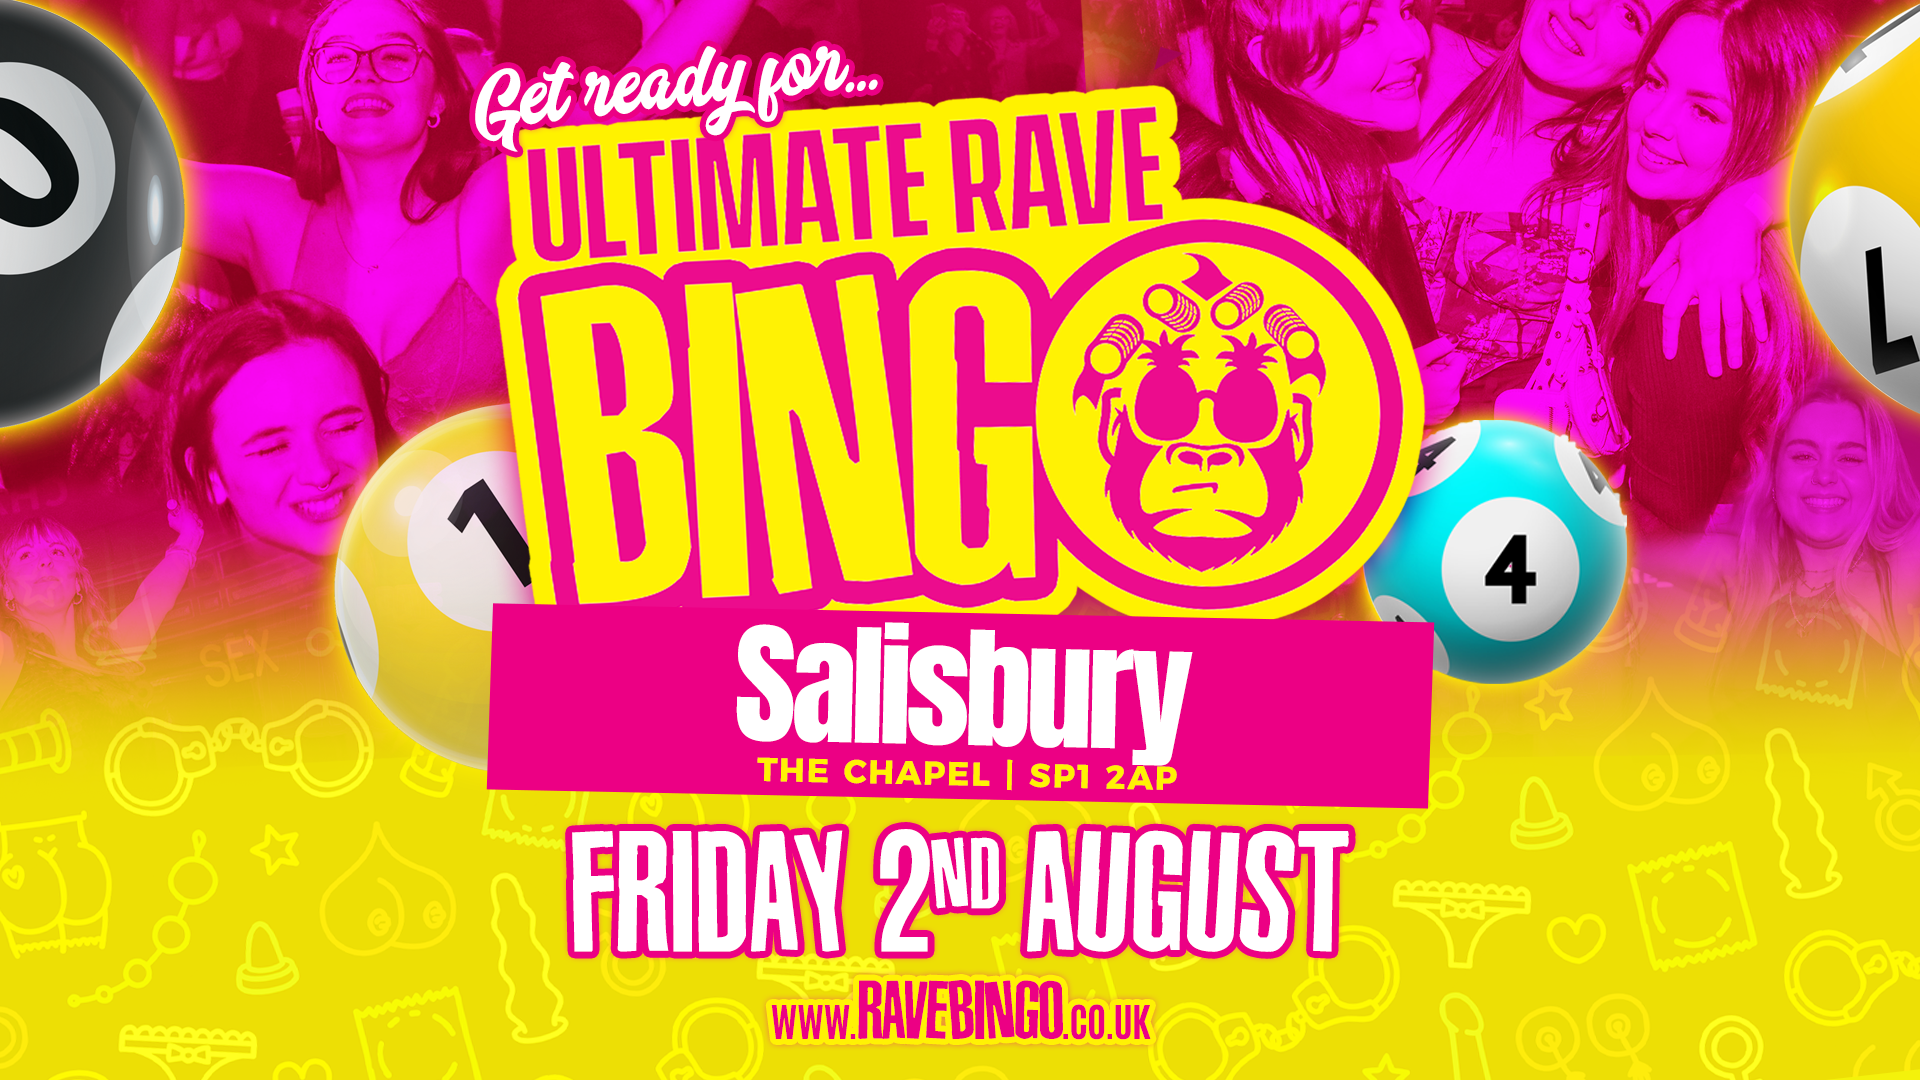 Ultimate Rave Bingo // Salisbury // Friday 2nd August